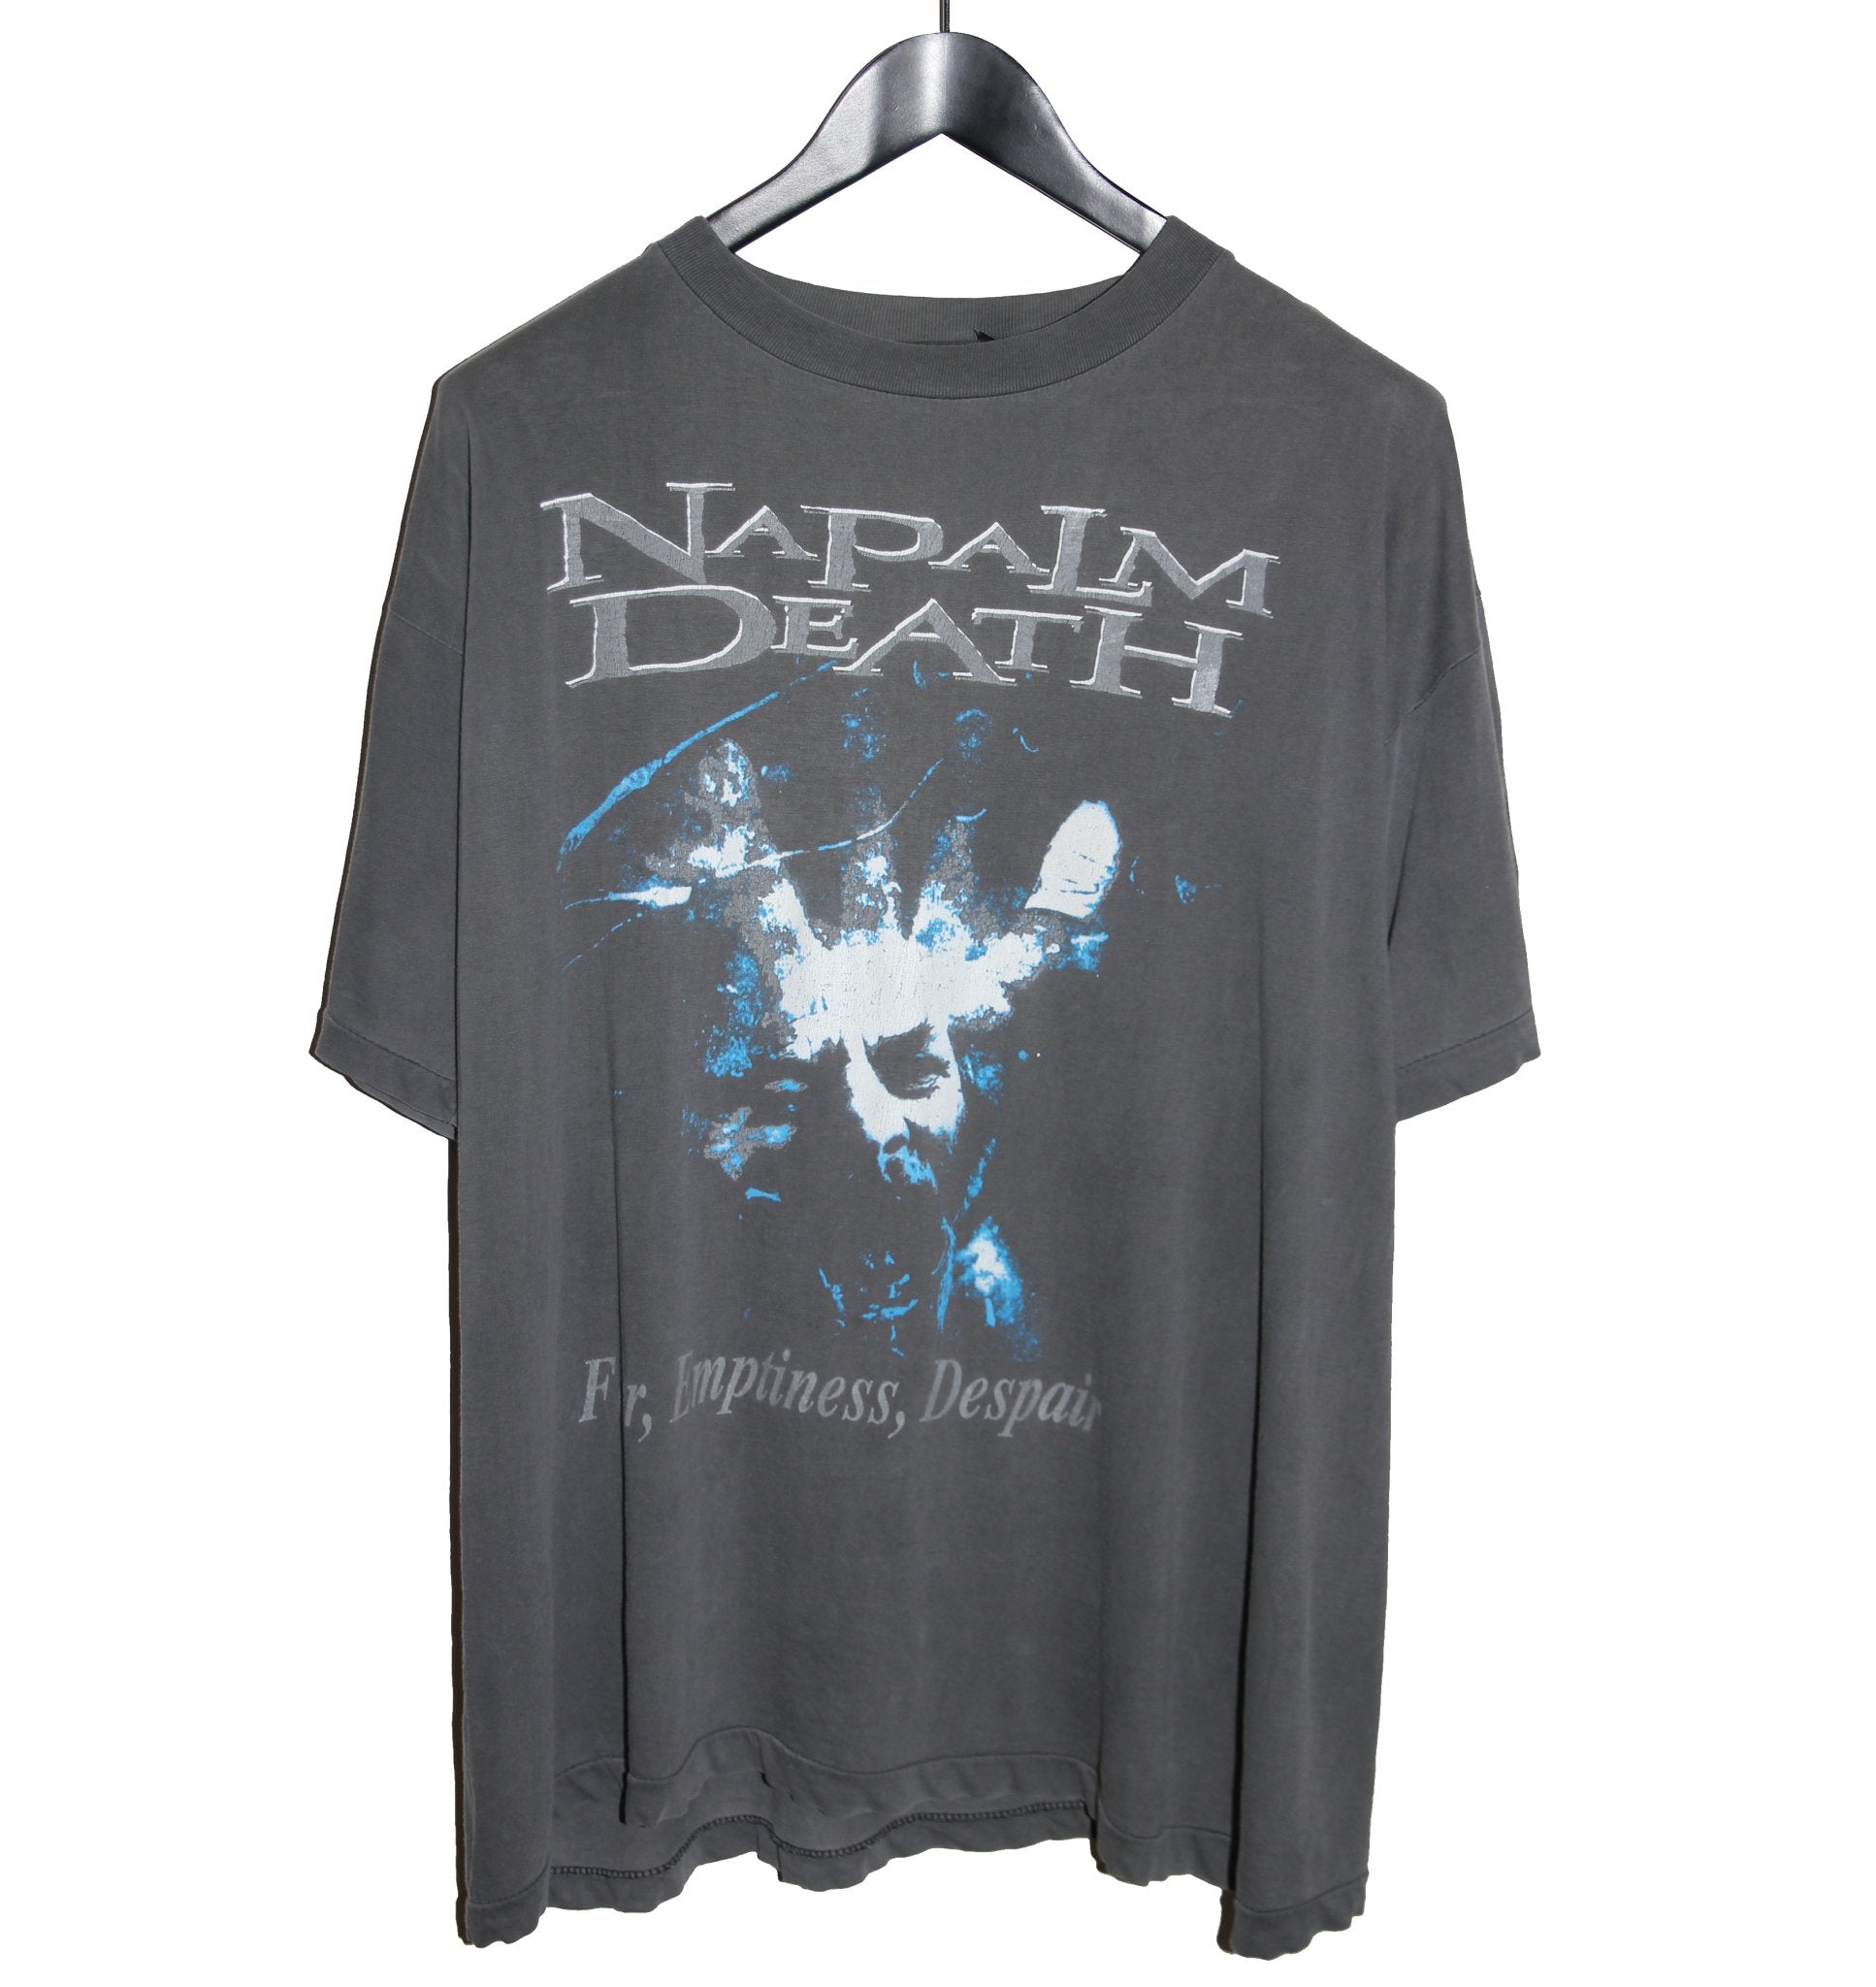 Napalm Death 1994 Fear, Emptiness, Despair Album Shirt - Faded AU